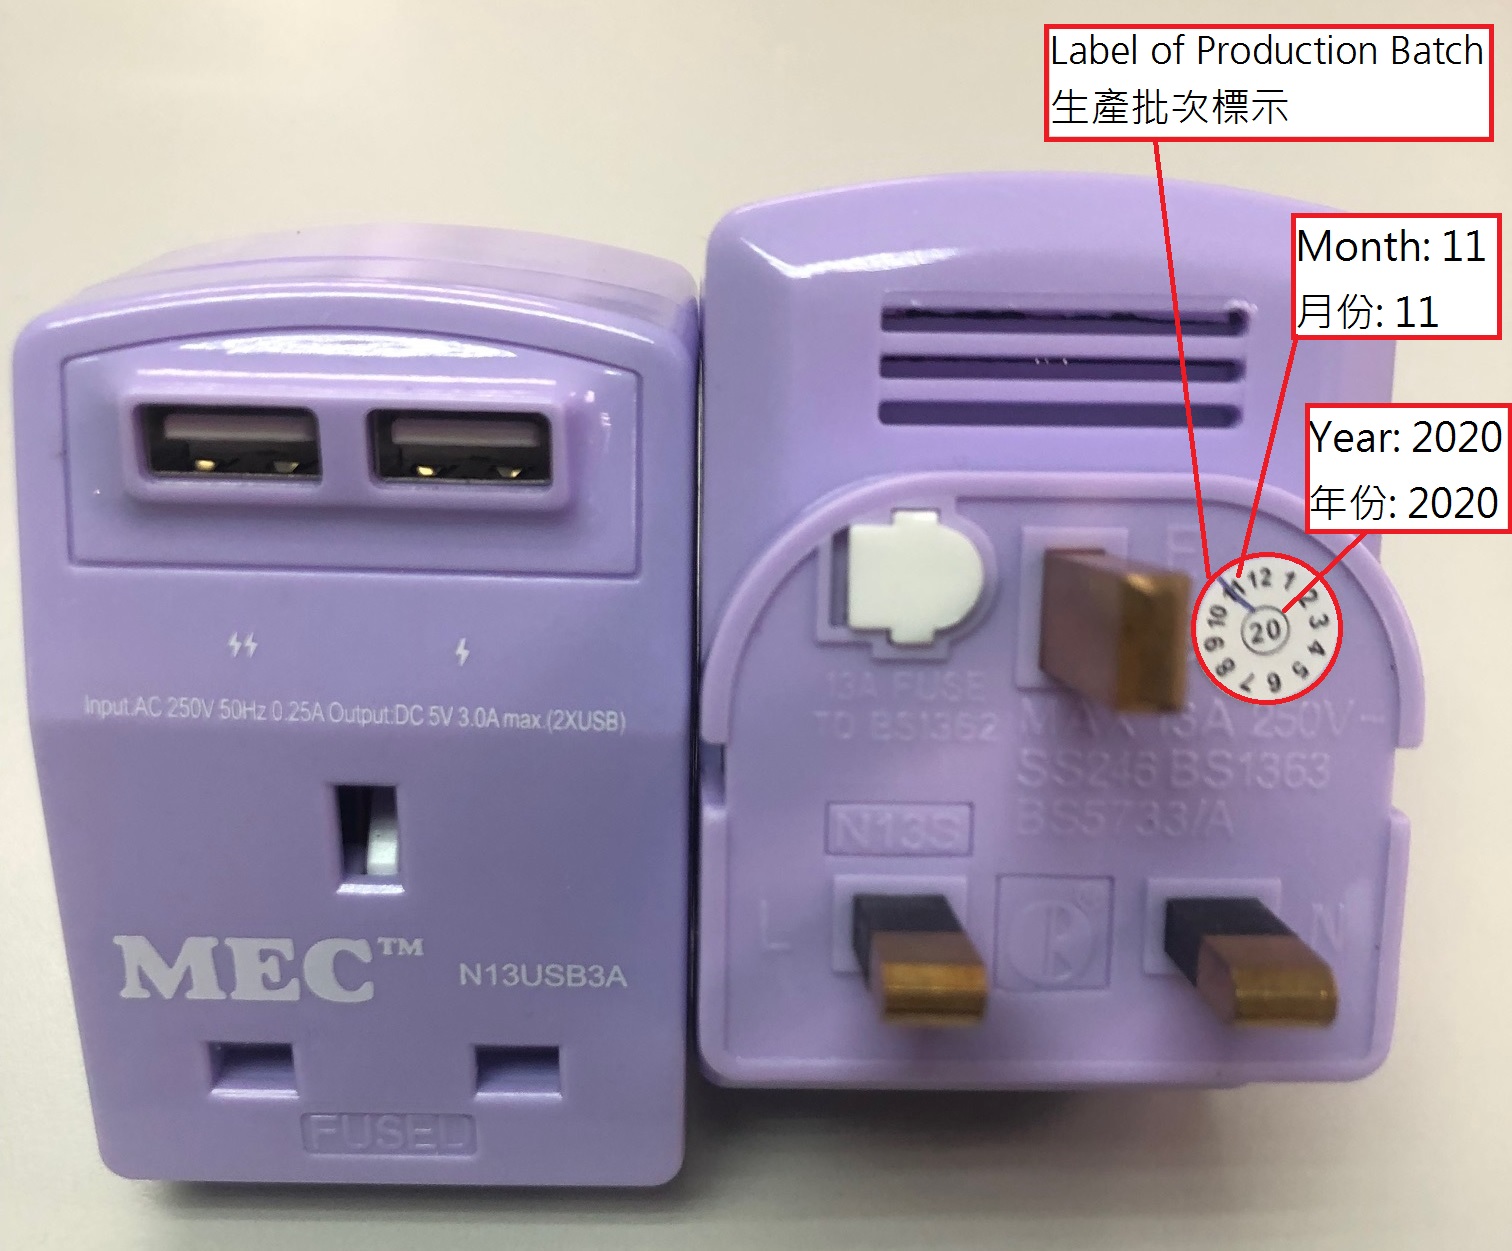 紫色「 MEC 」牌型號 N13USB3A 適配接頭，附標籤說明及產品標示